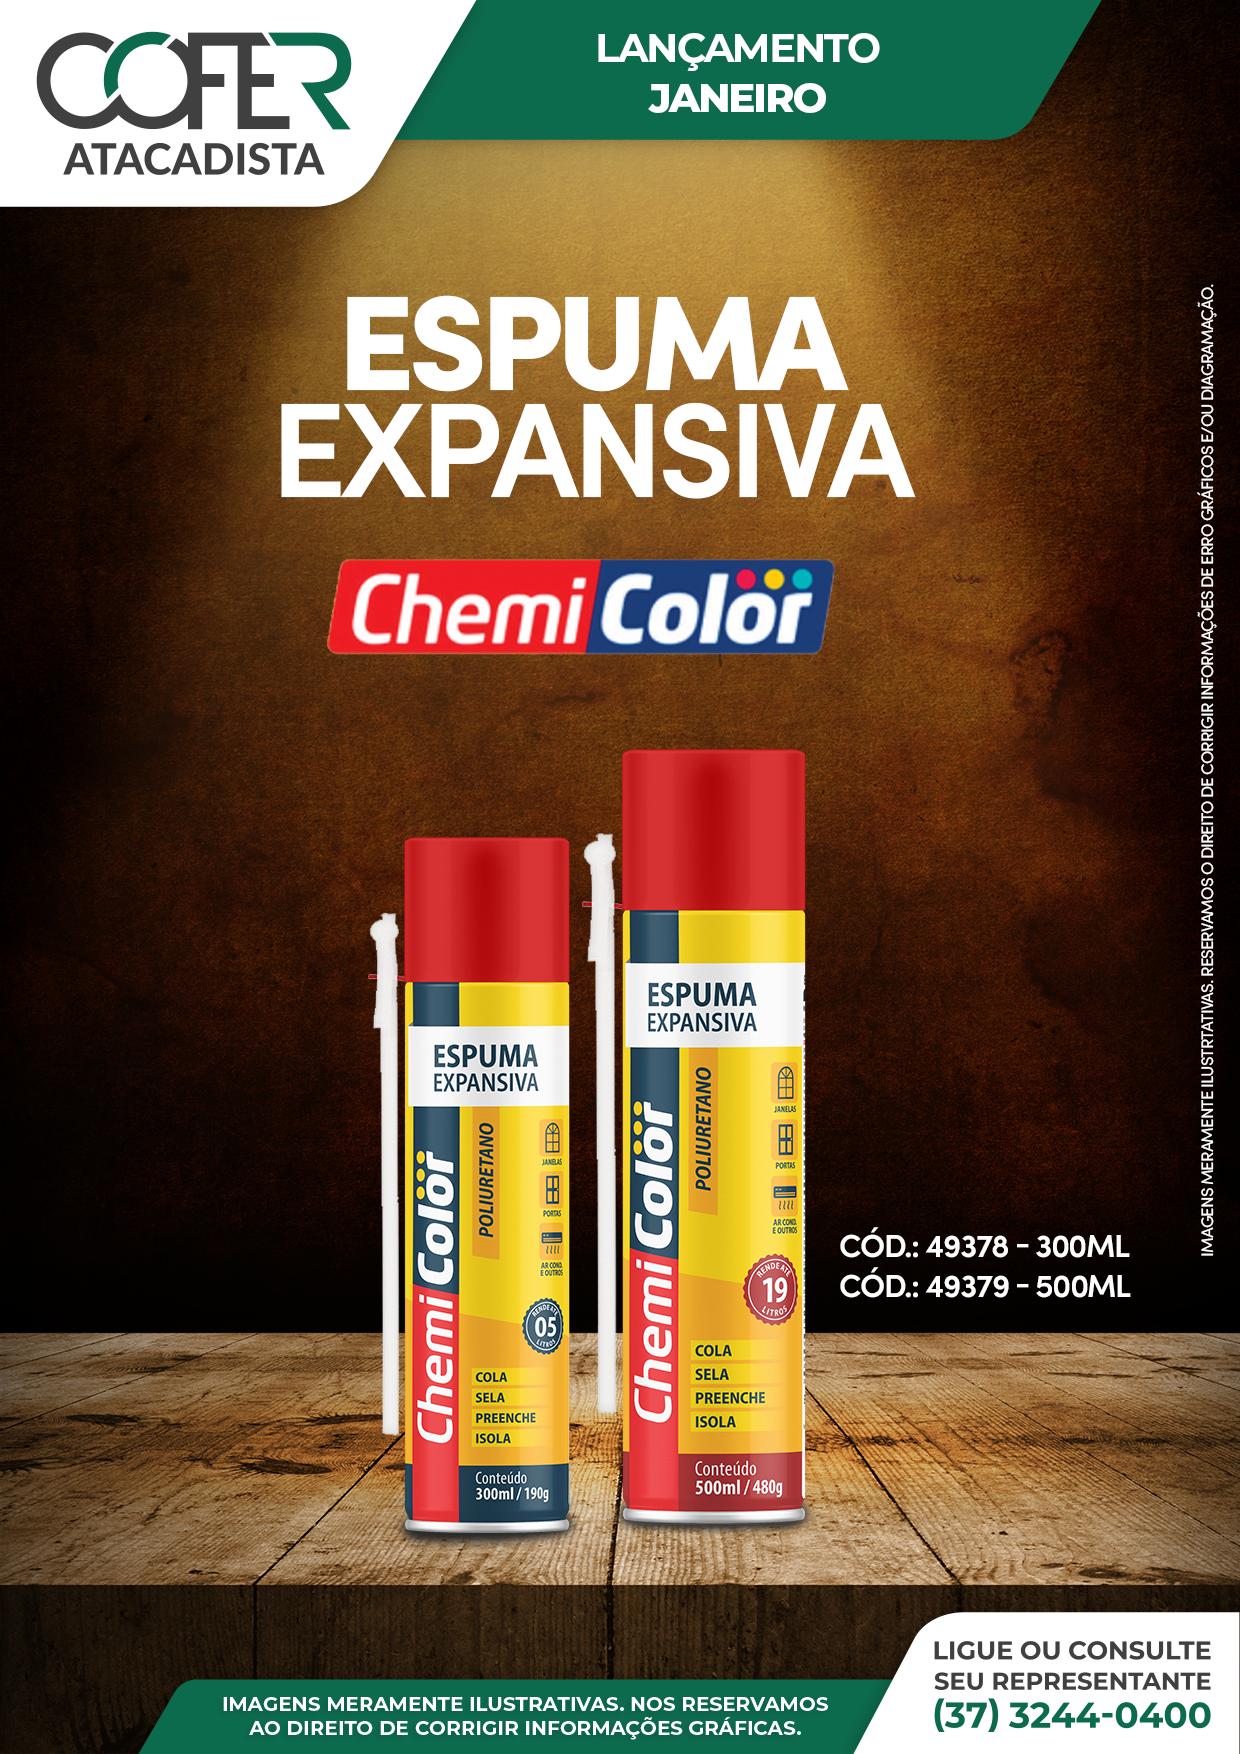 Lançamento-ESPUMA-EXPANSIVA-CHEMICOLLOR